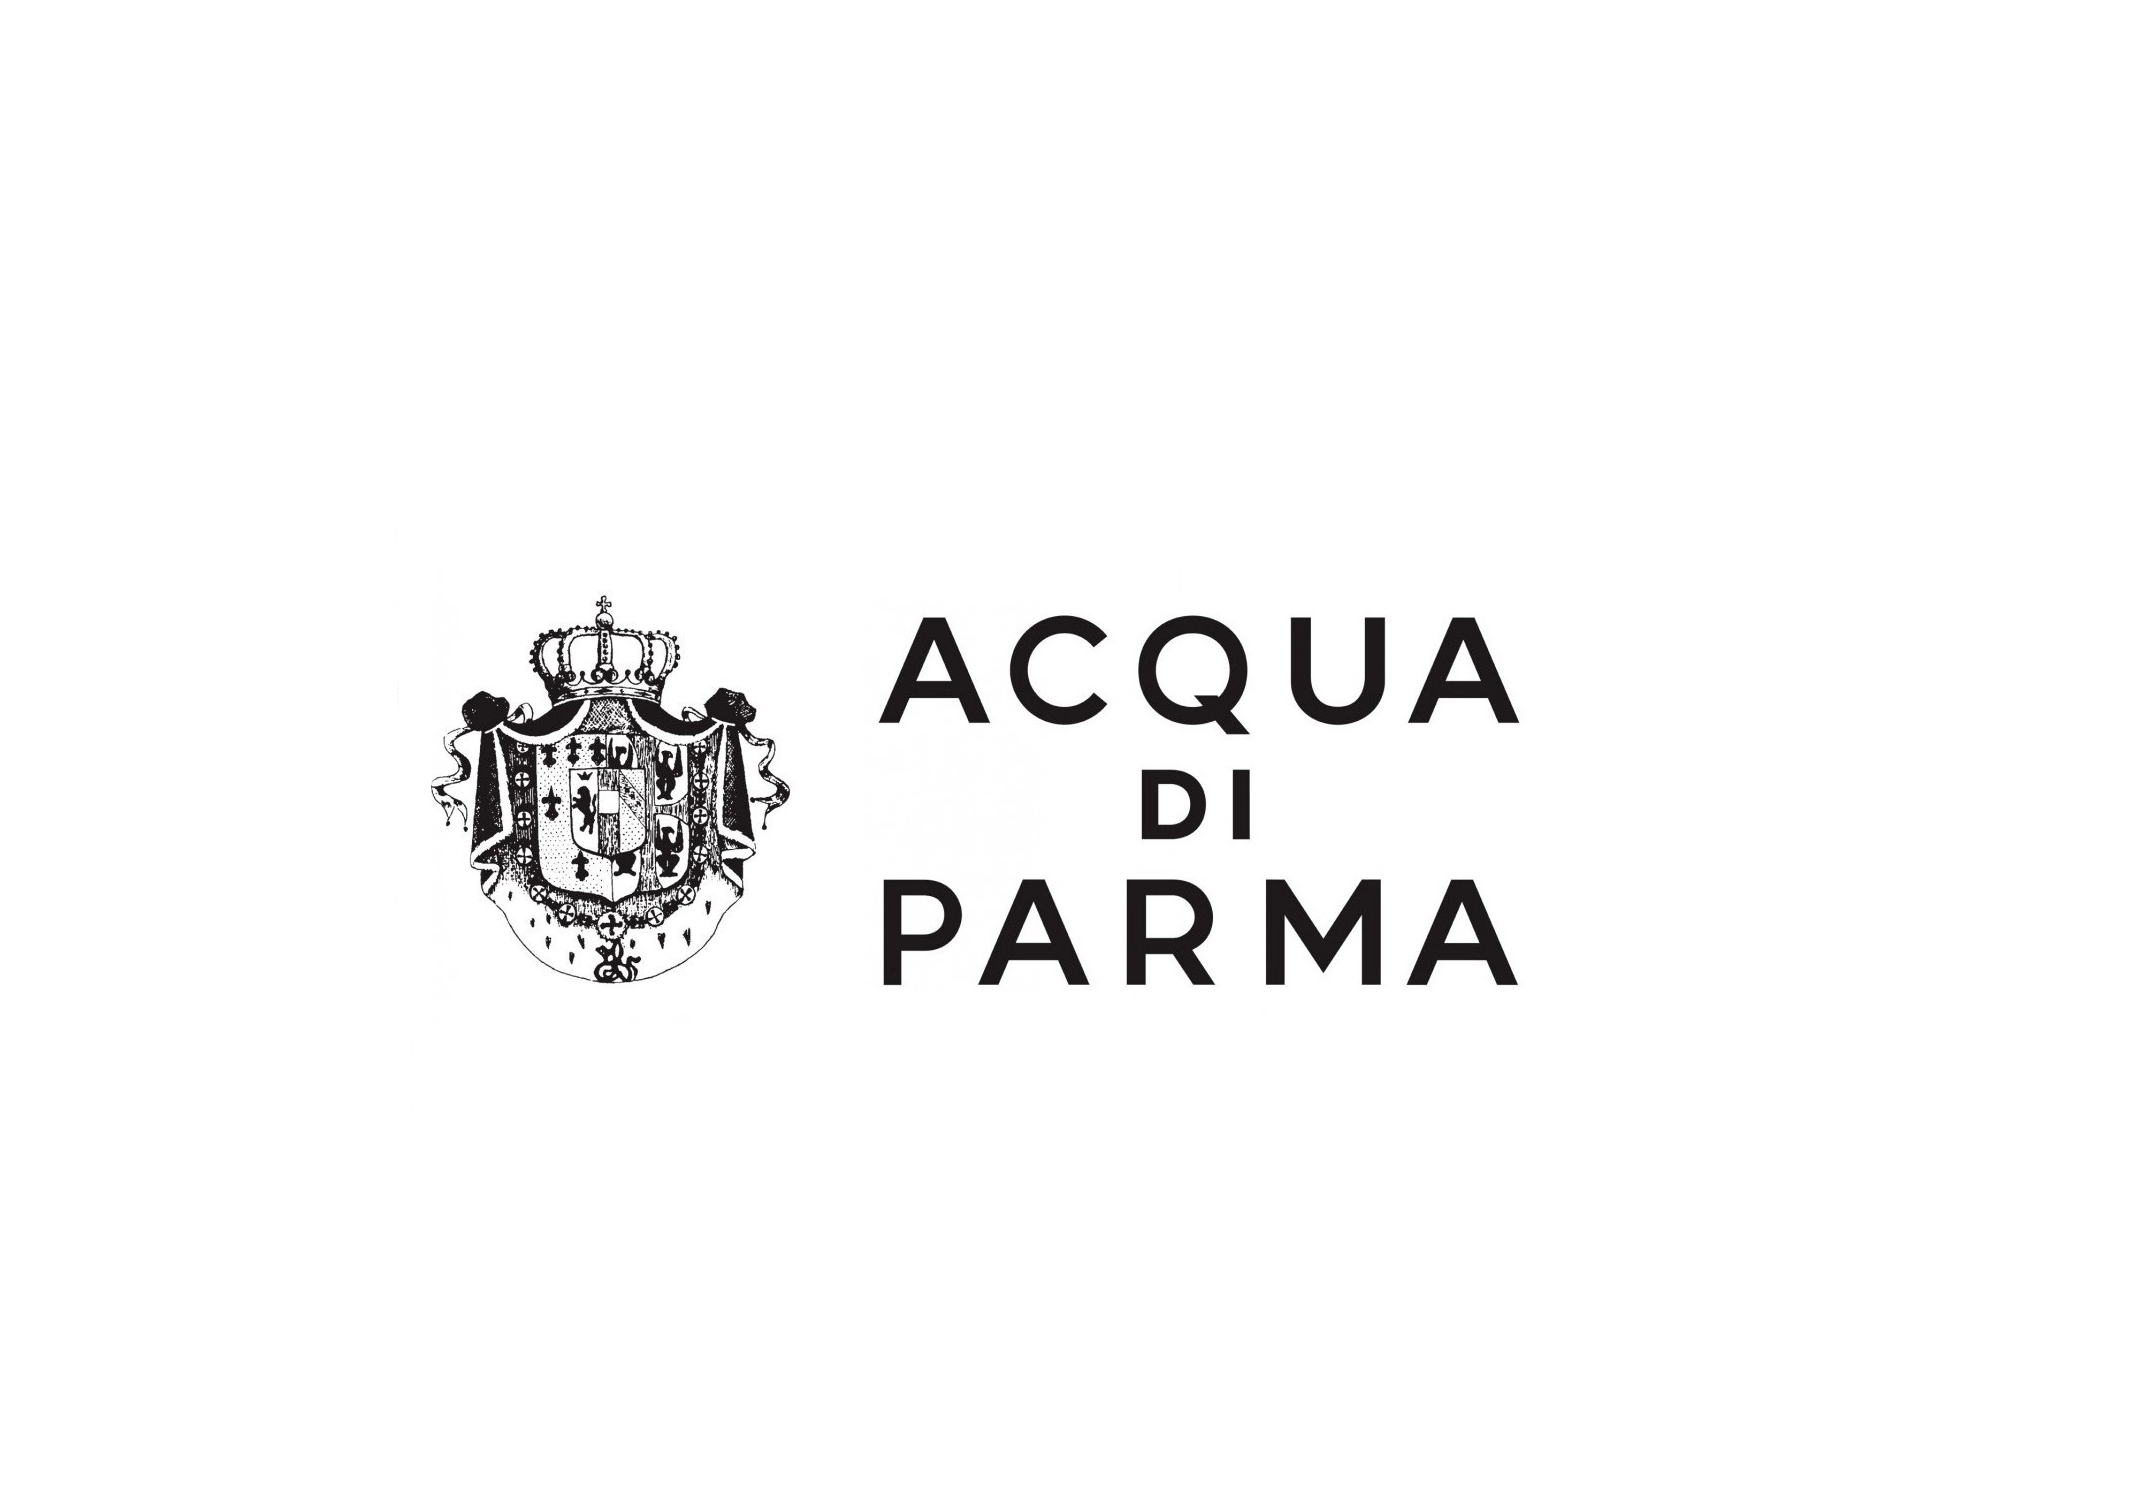 Acqua Di Parma Colonia, Fragrance Samples